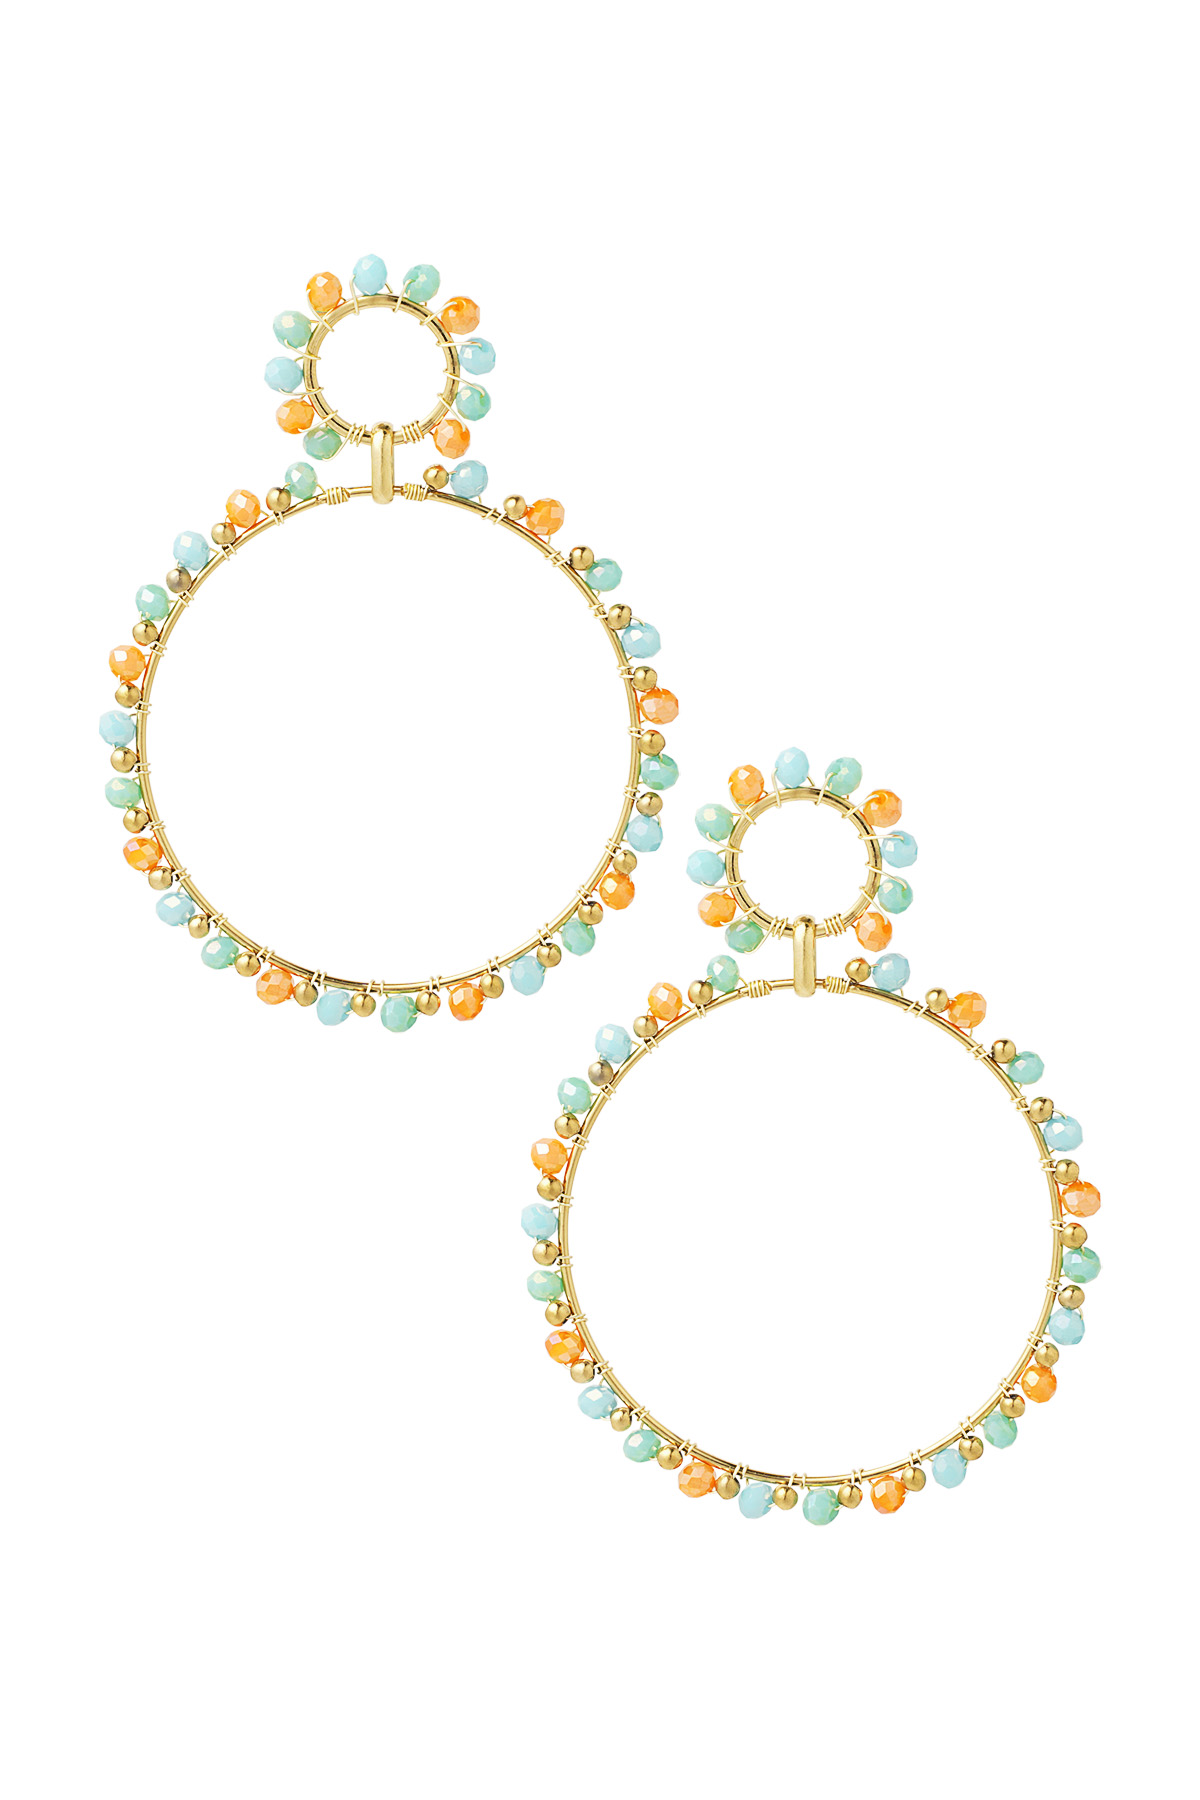 Oorbellen dubbele kralen rondjes - goud/blauw/oranje h5 